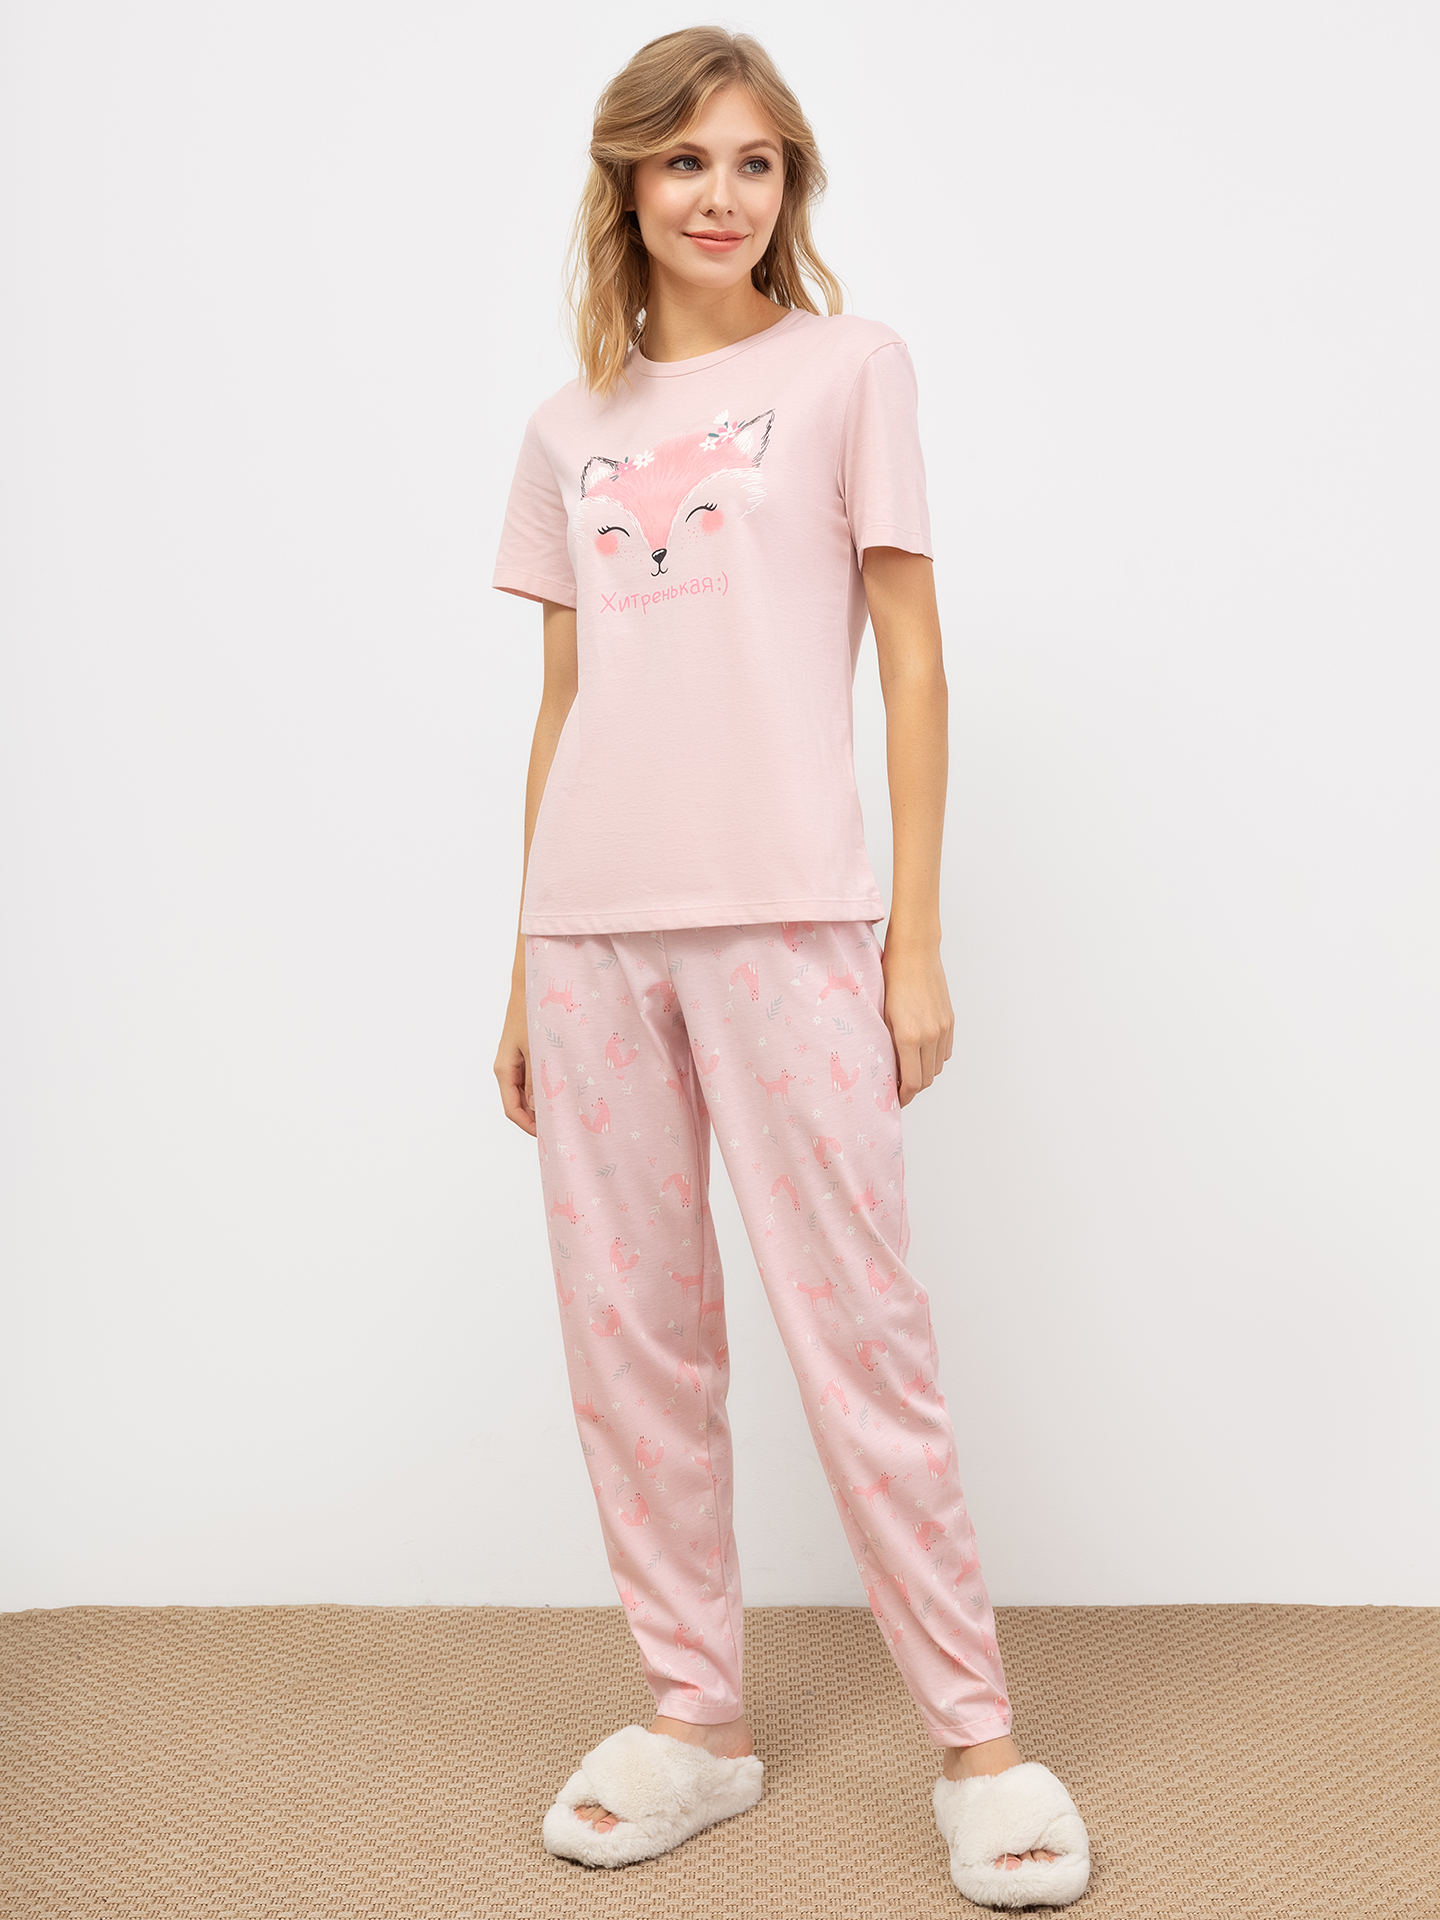 Хлопковый комплект (футболка и брюки) розового цвета с лисичками